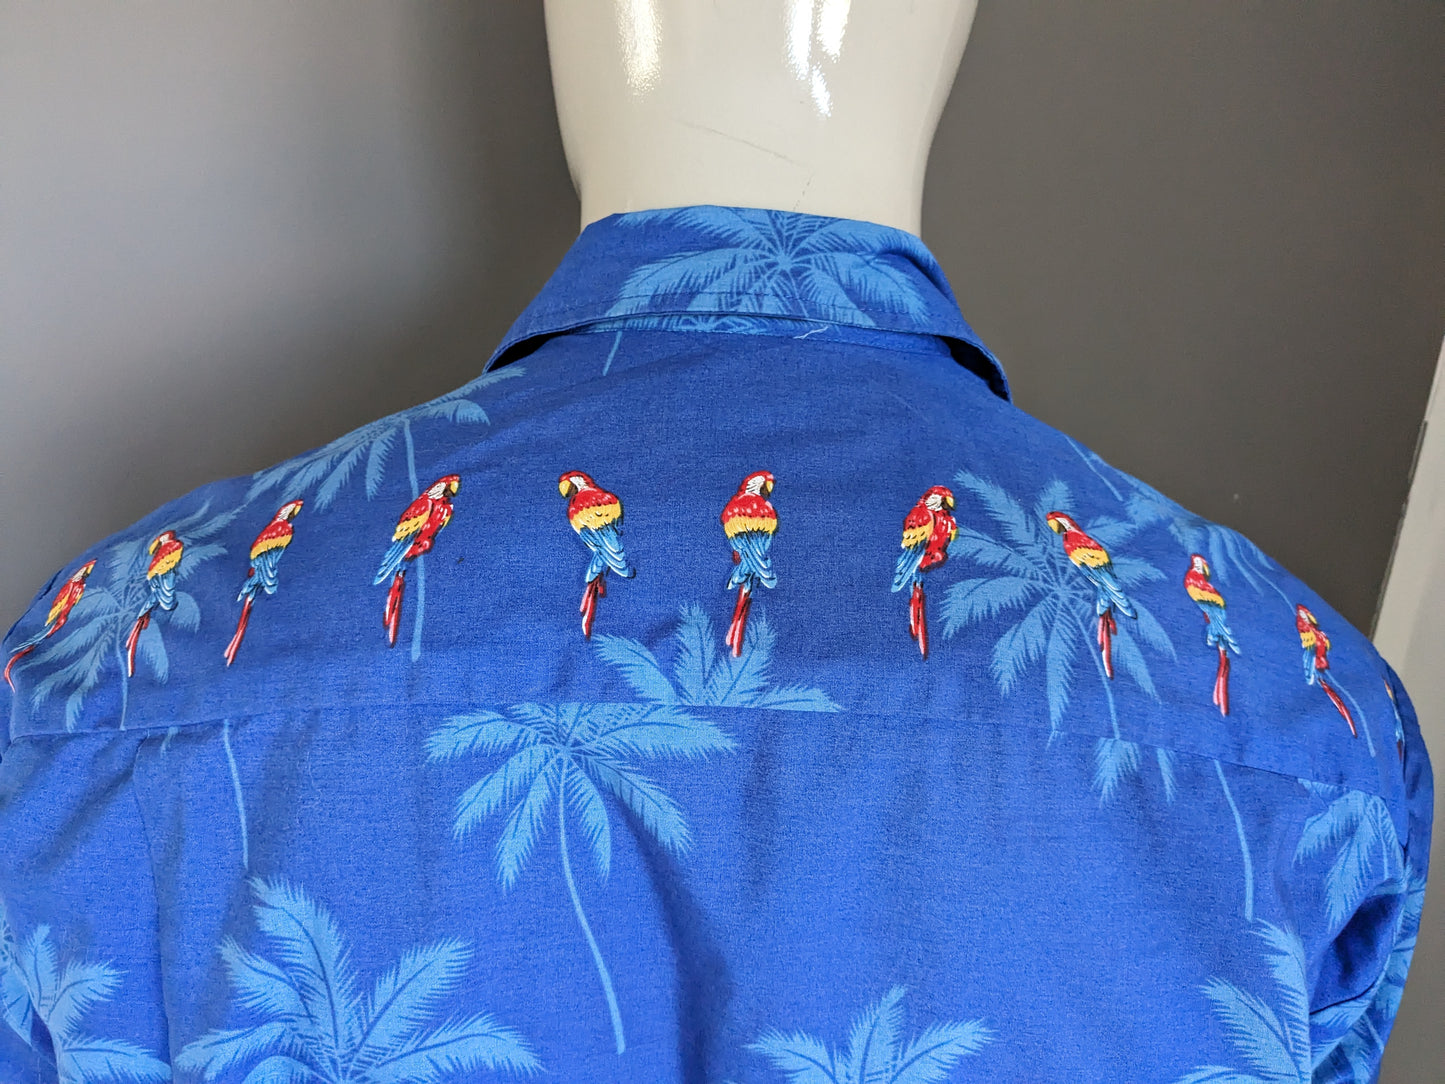 Pacific Legend Hawaii Shirt Short Sleeve. Impression de perroquet coloré. Taille L.